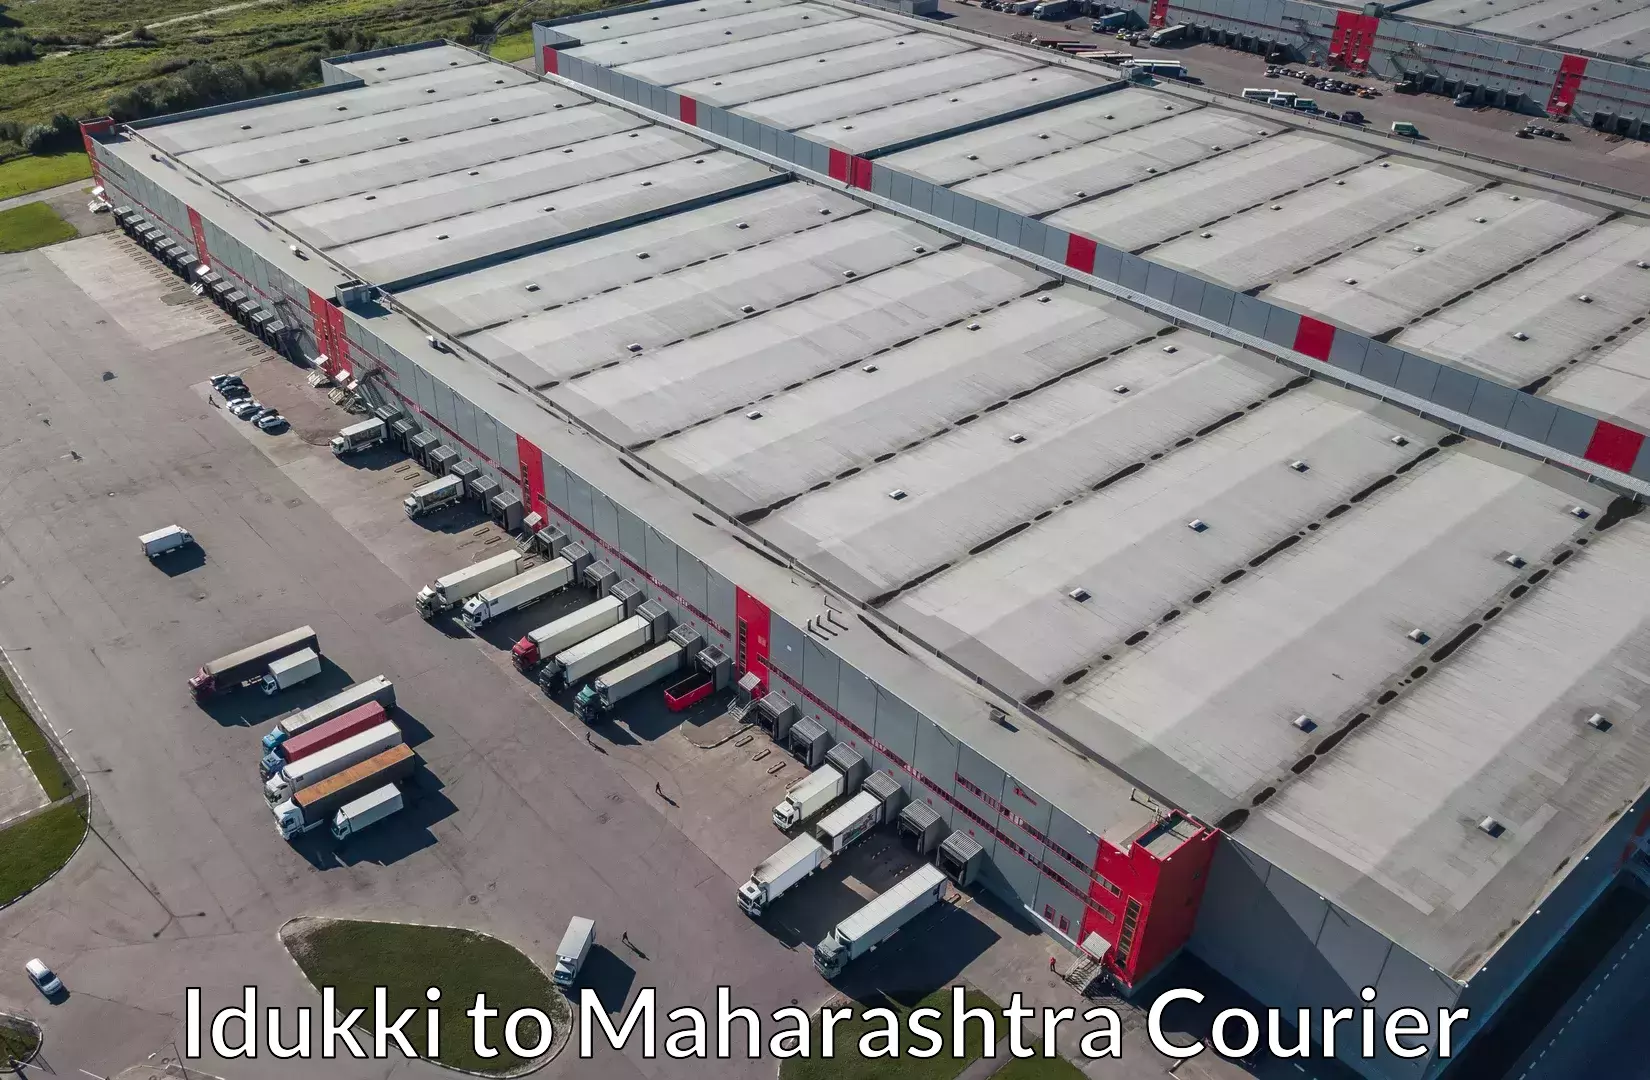 Luggage forwarding service Idukki to Maharashtra